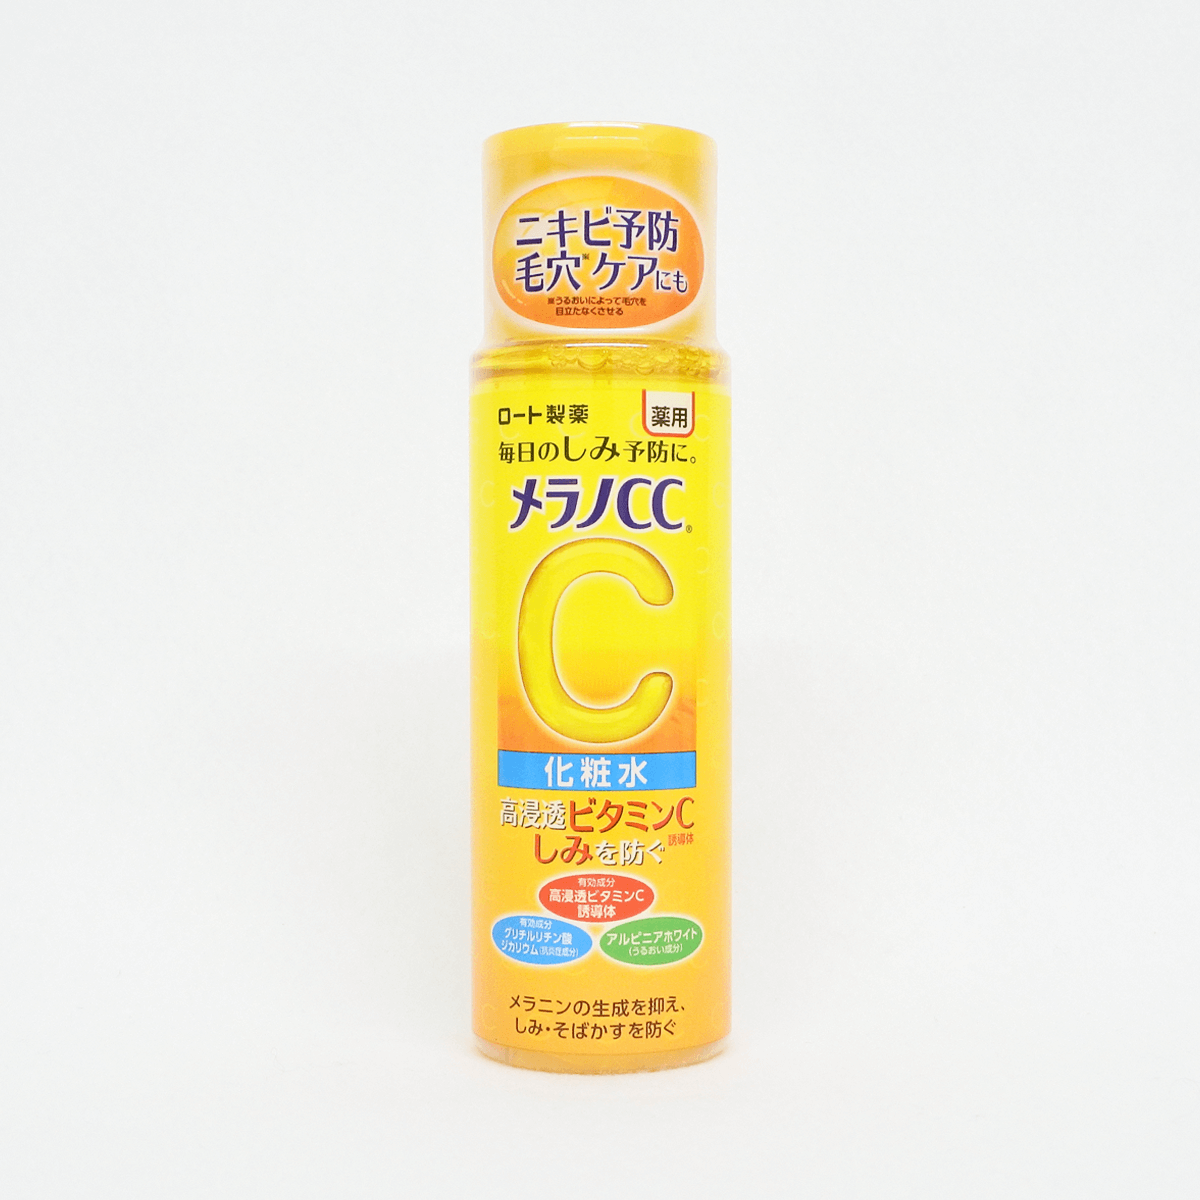 乐敦制药 Melano CC 药用淡斑美白化妆水 170ml